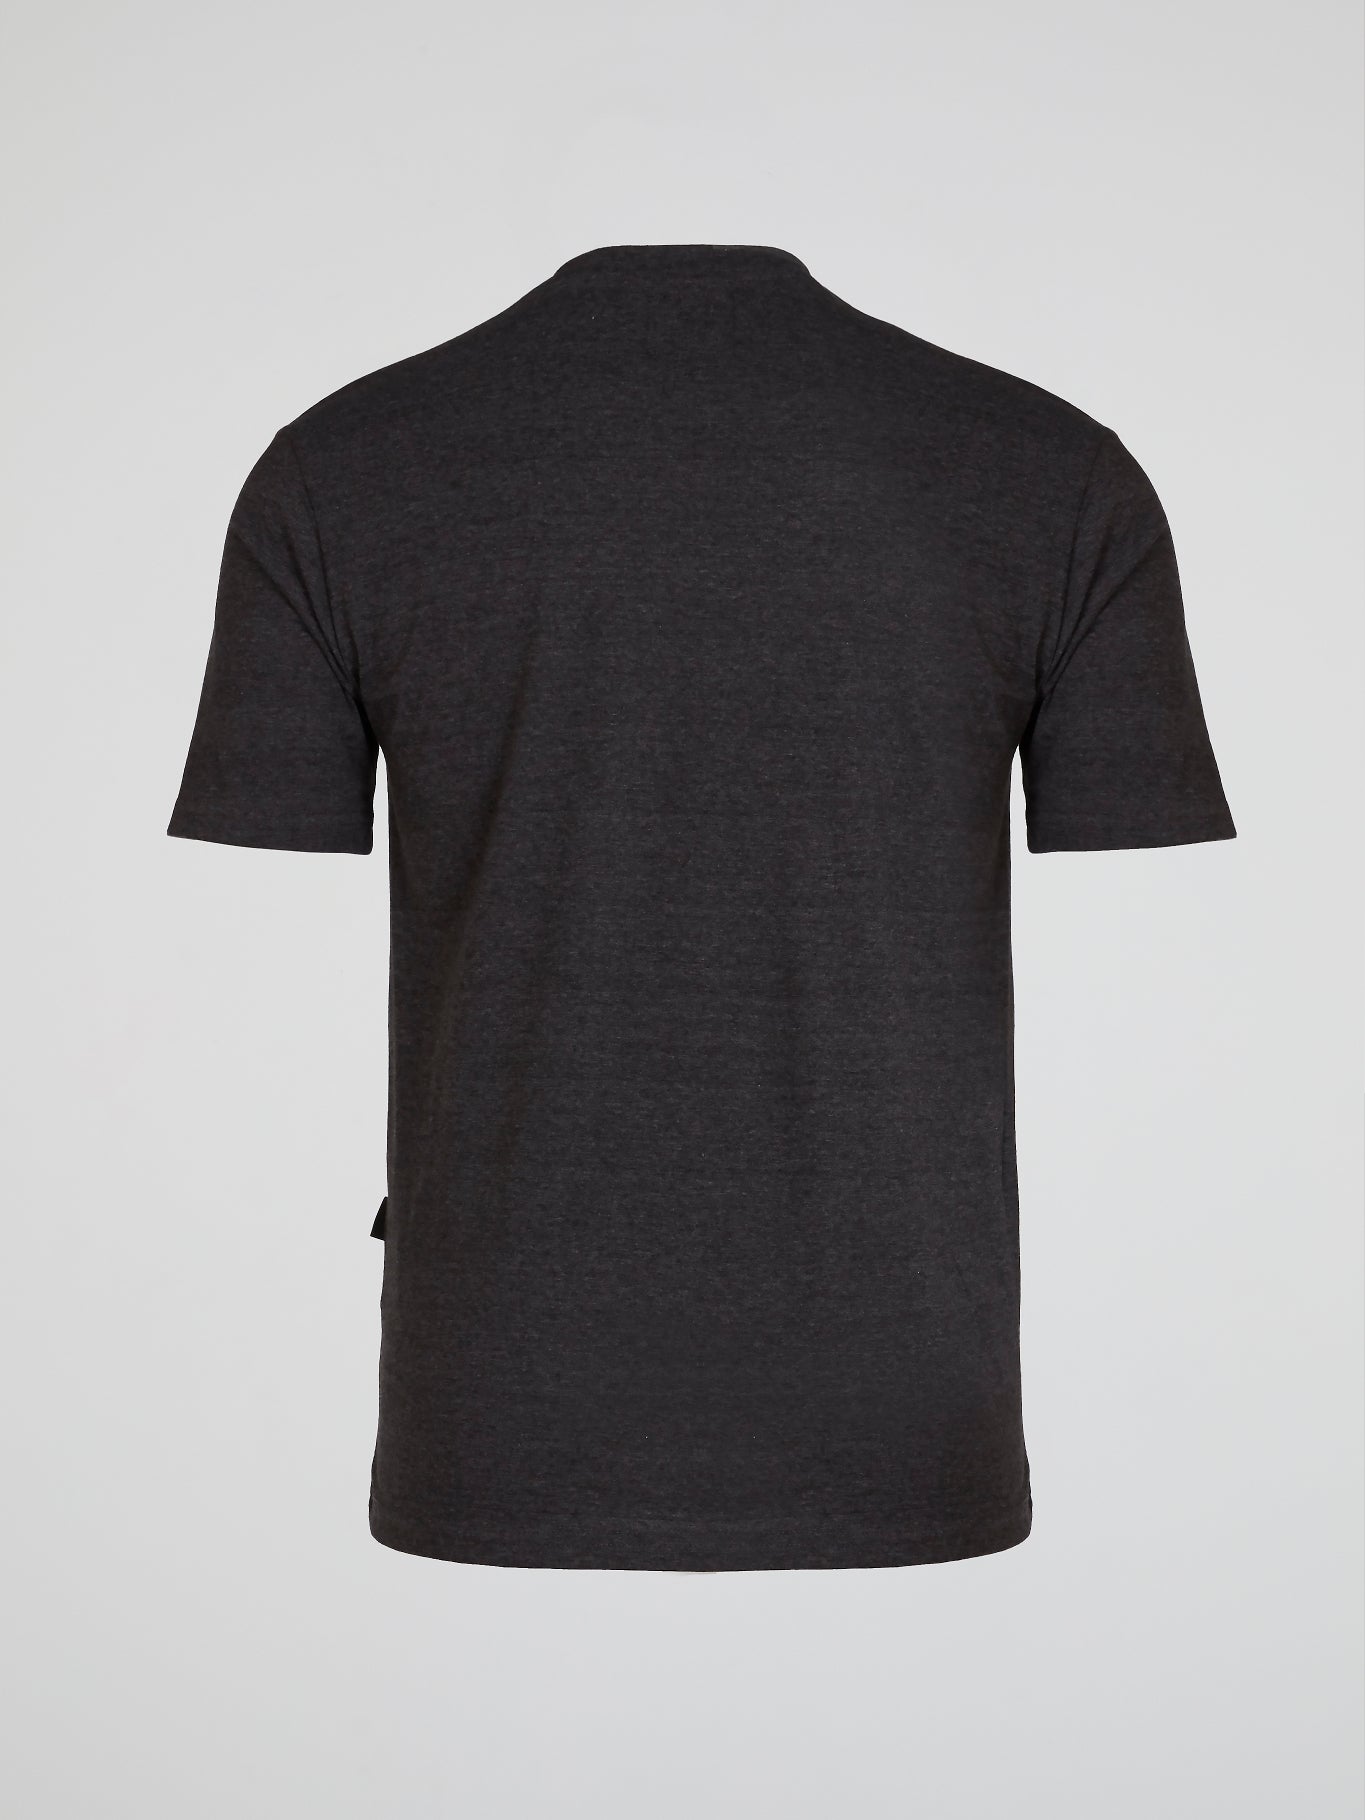 Black Graphic Cotton T-Shirt